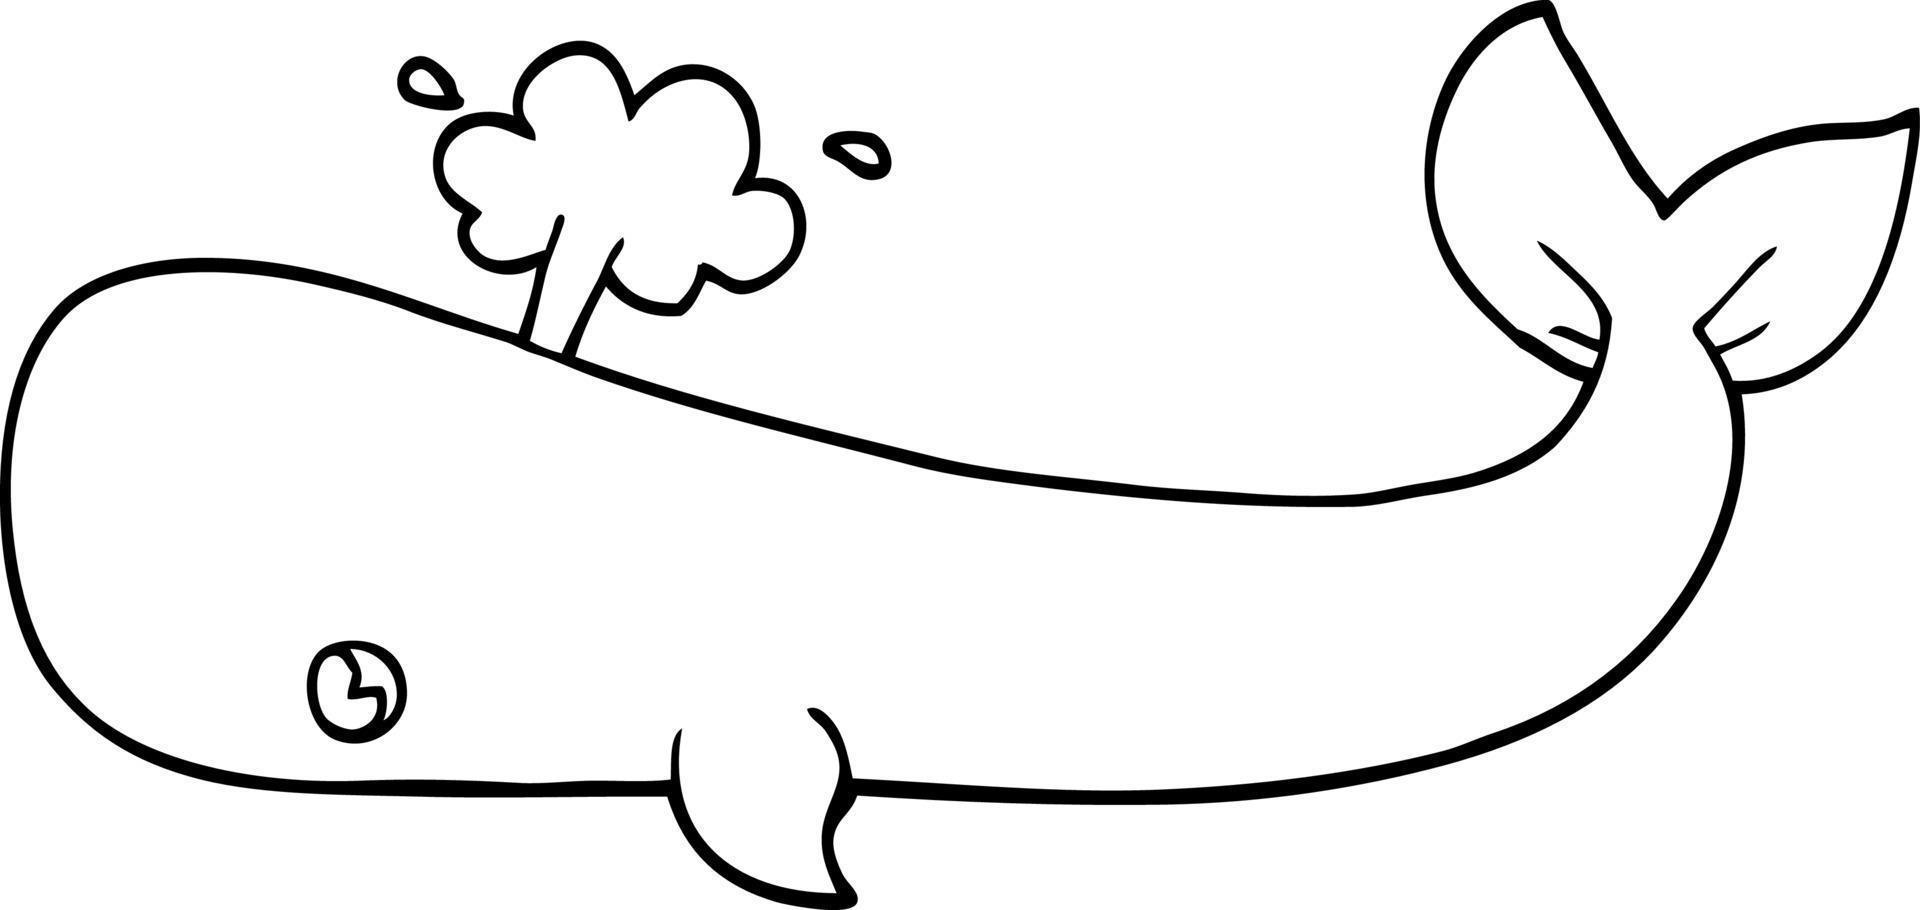 desenho de linha desenho de baleia vetor